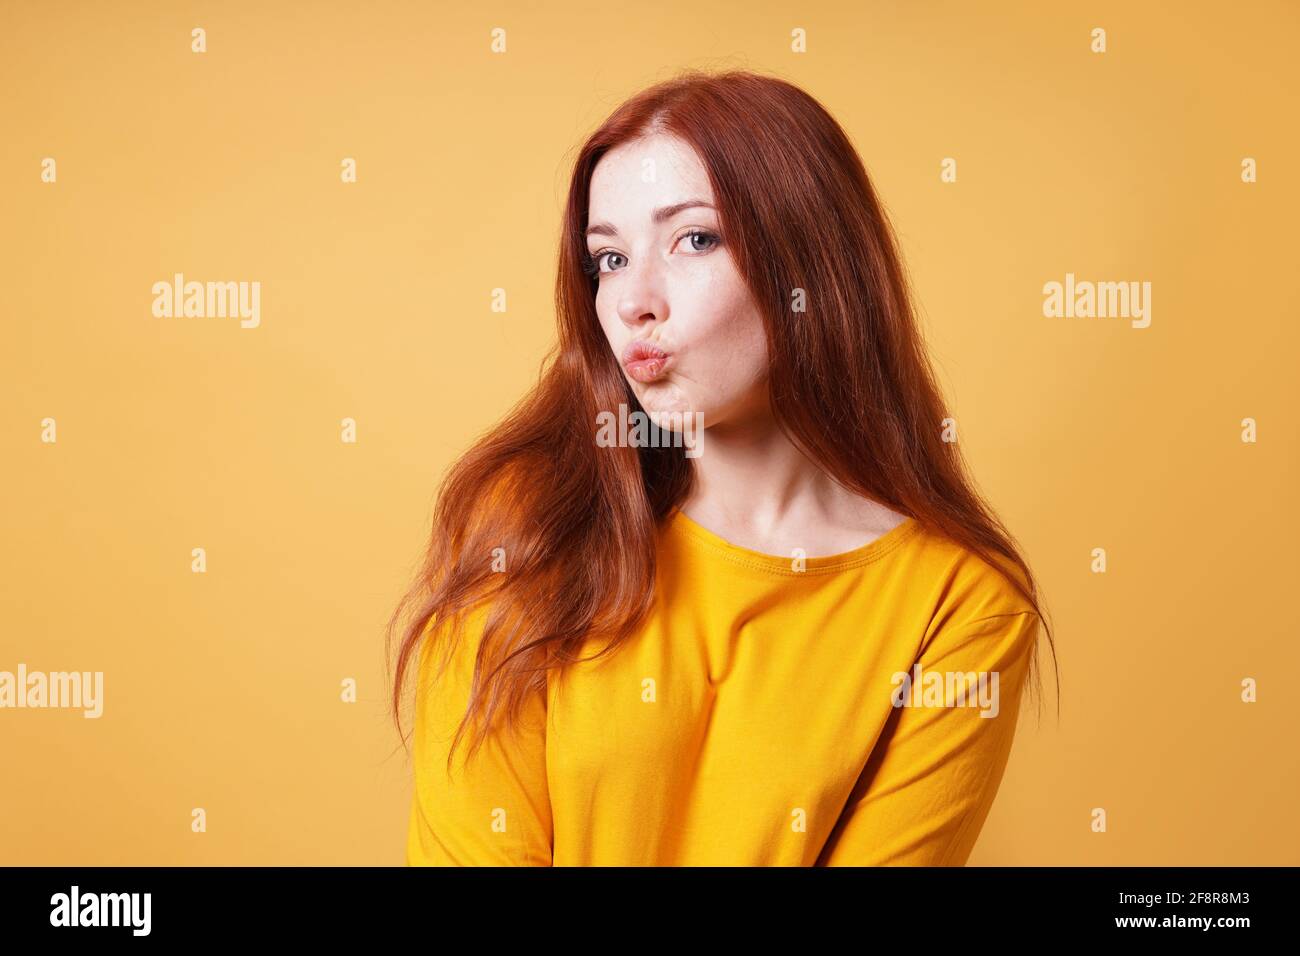 Eine junge Frau, die ihre Lippen nach einem Kuss oder einem Entengesicht duckelt Gesichtsausdruck Stockfoto